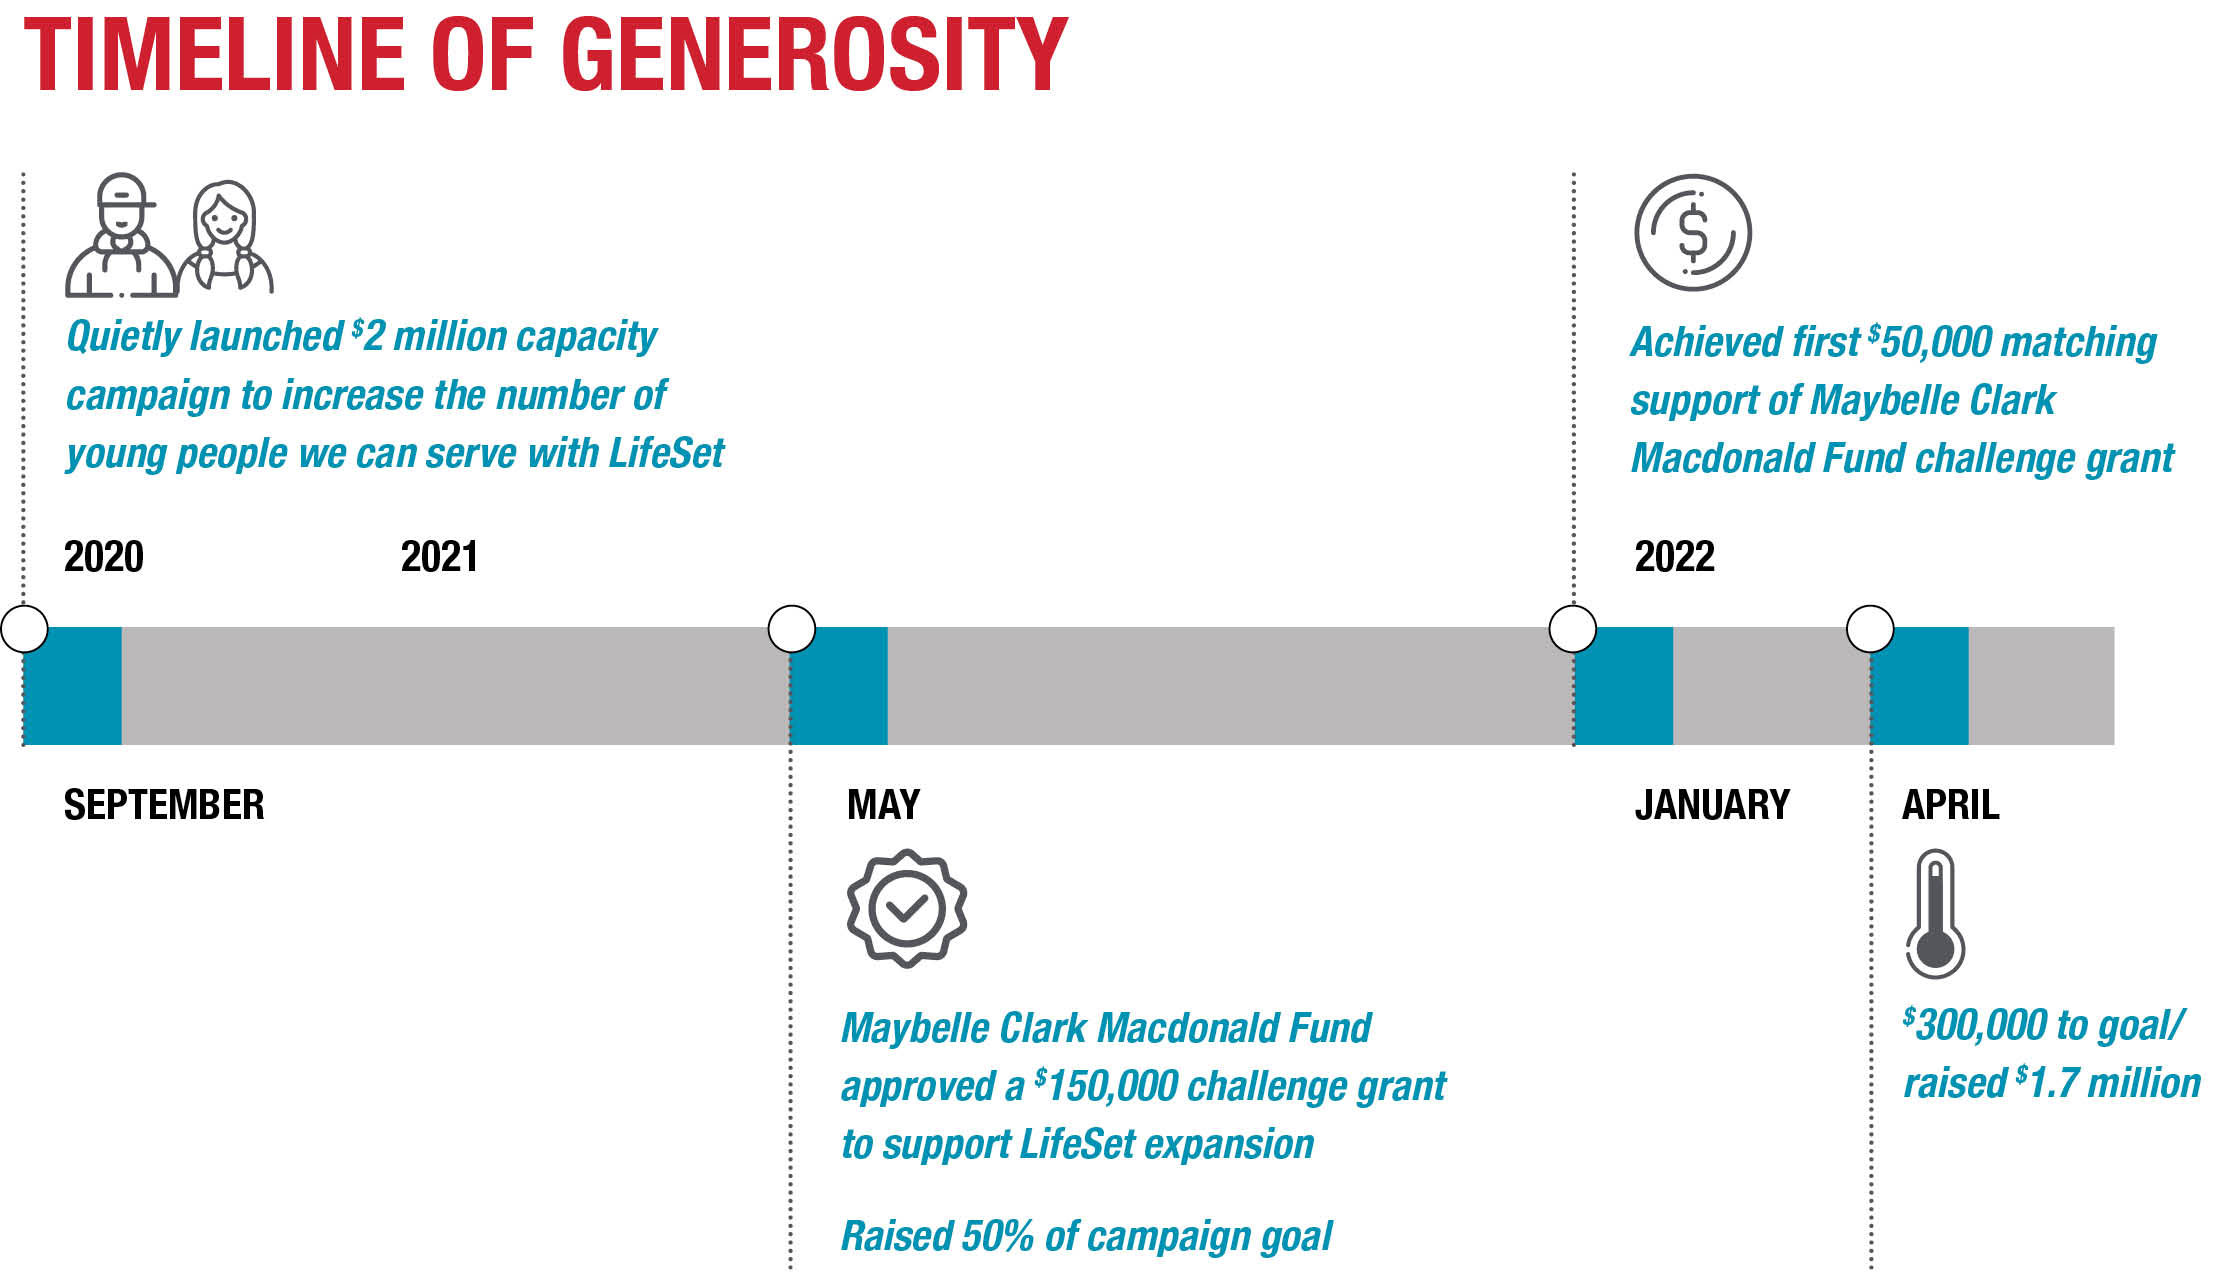 Oregon LifeSet Timeline of Generosity